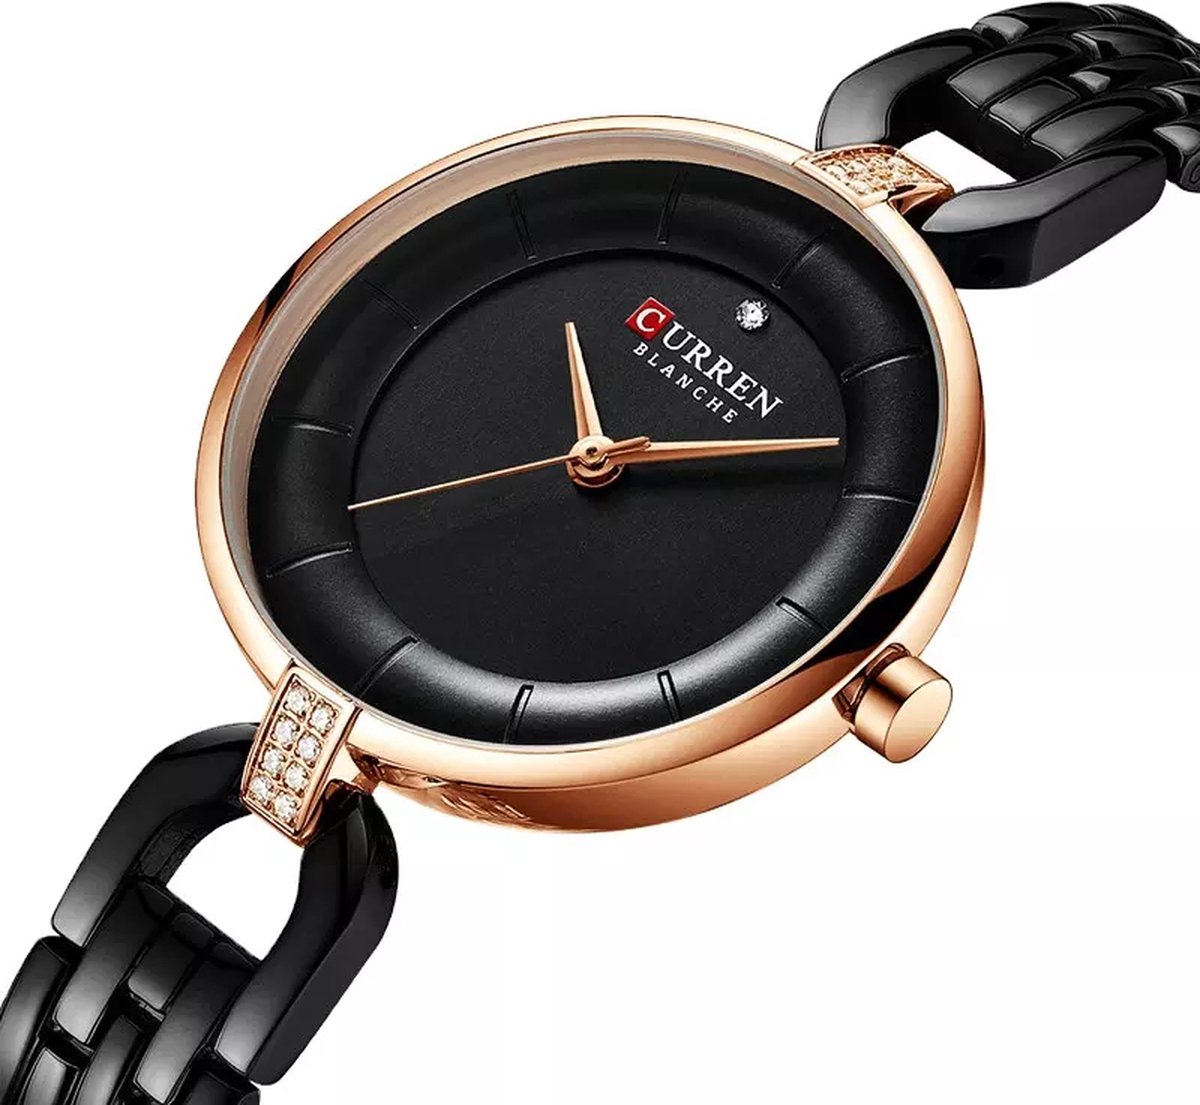 NIBOSI Horloges voor Vrouwen – Luxe Zwart/Goudkleurig Design